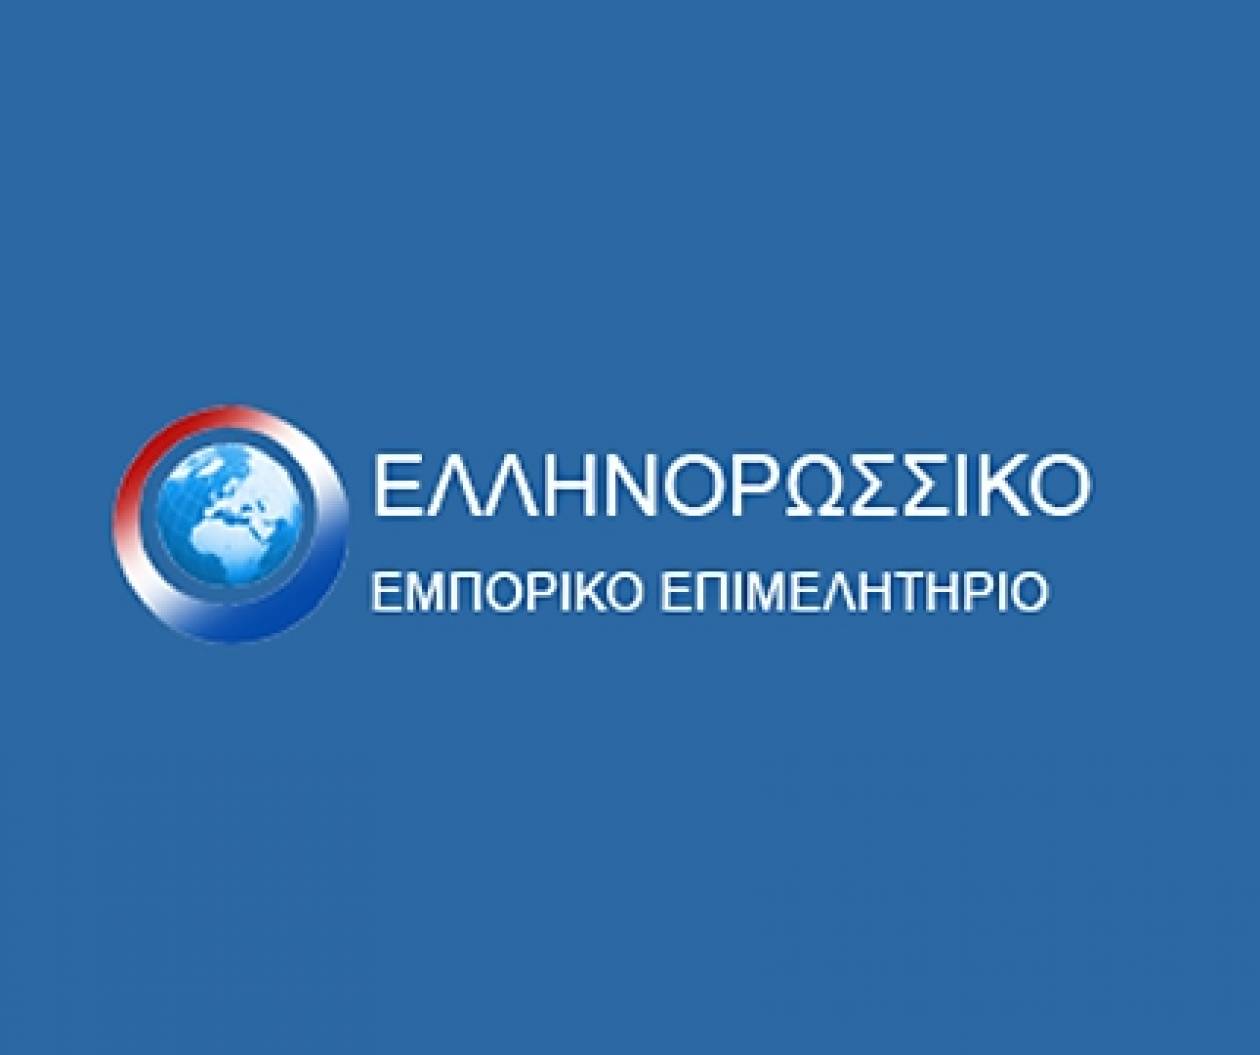 Ανακοίνωση του Ελληνορωσικού Εμπορικού Επιμελητηρίου